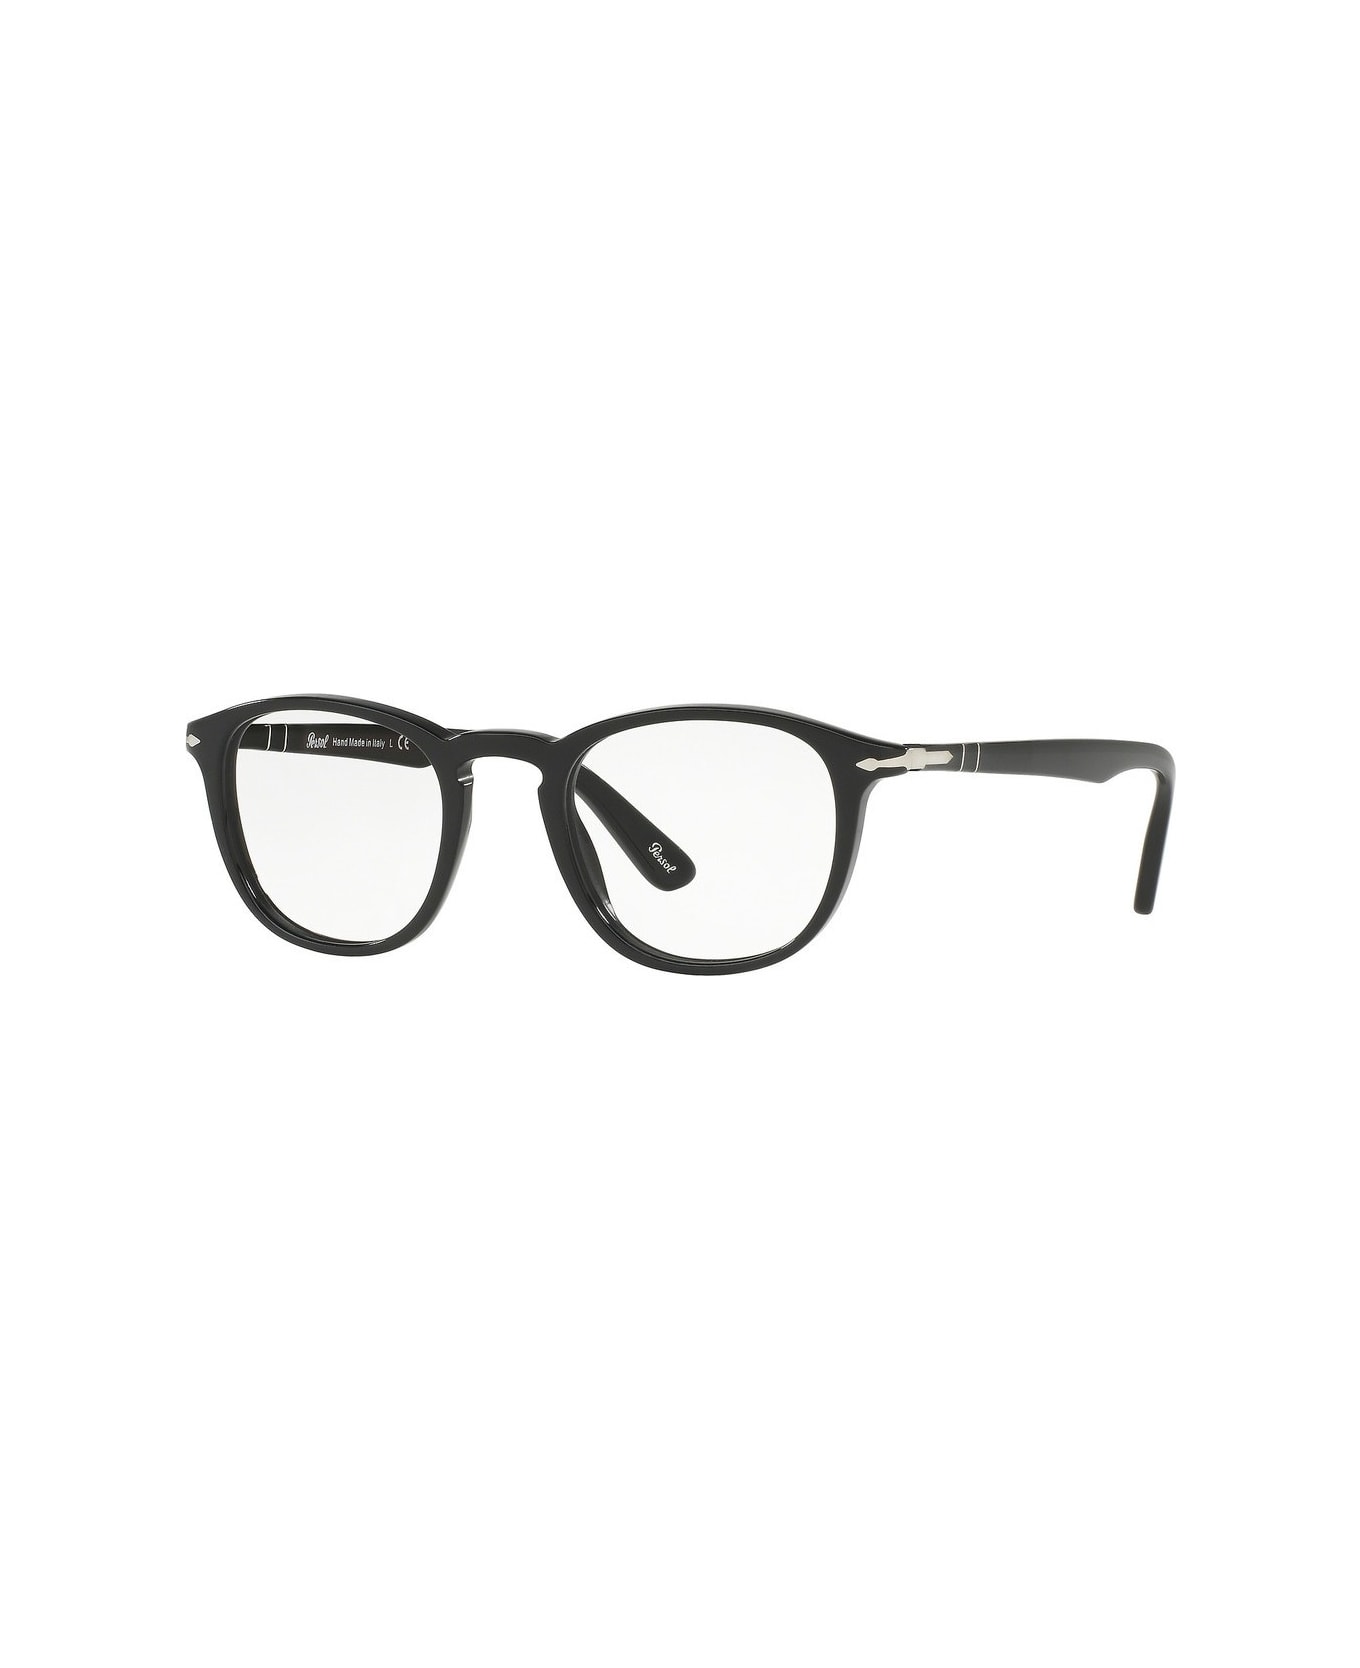 Persol Po3143v Glasses - Nero アイウェア